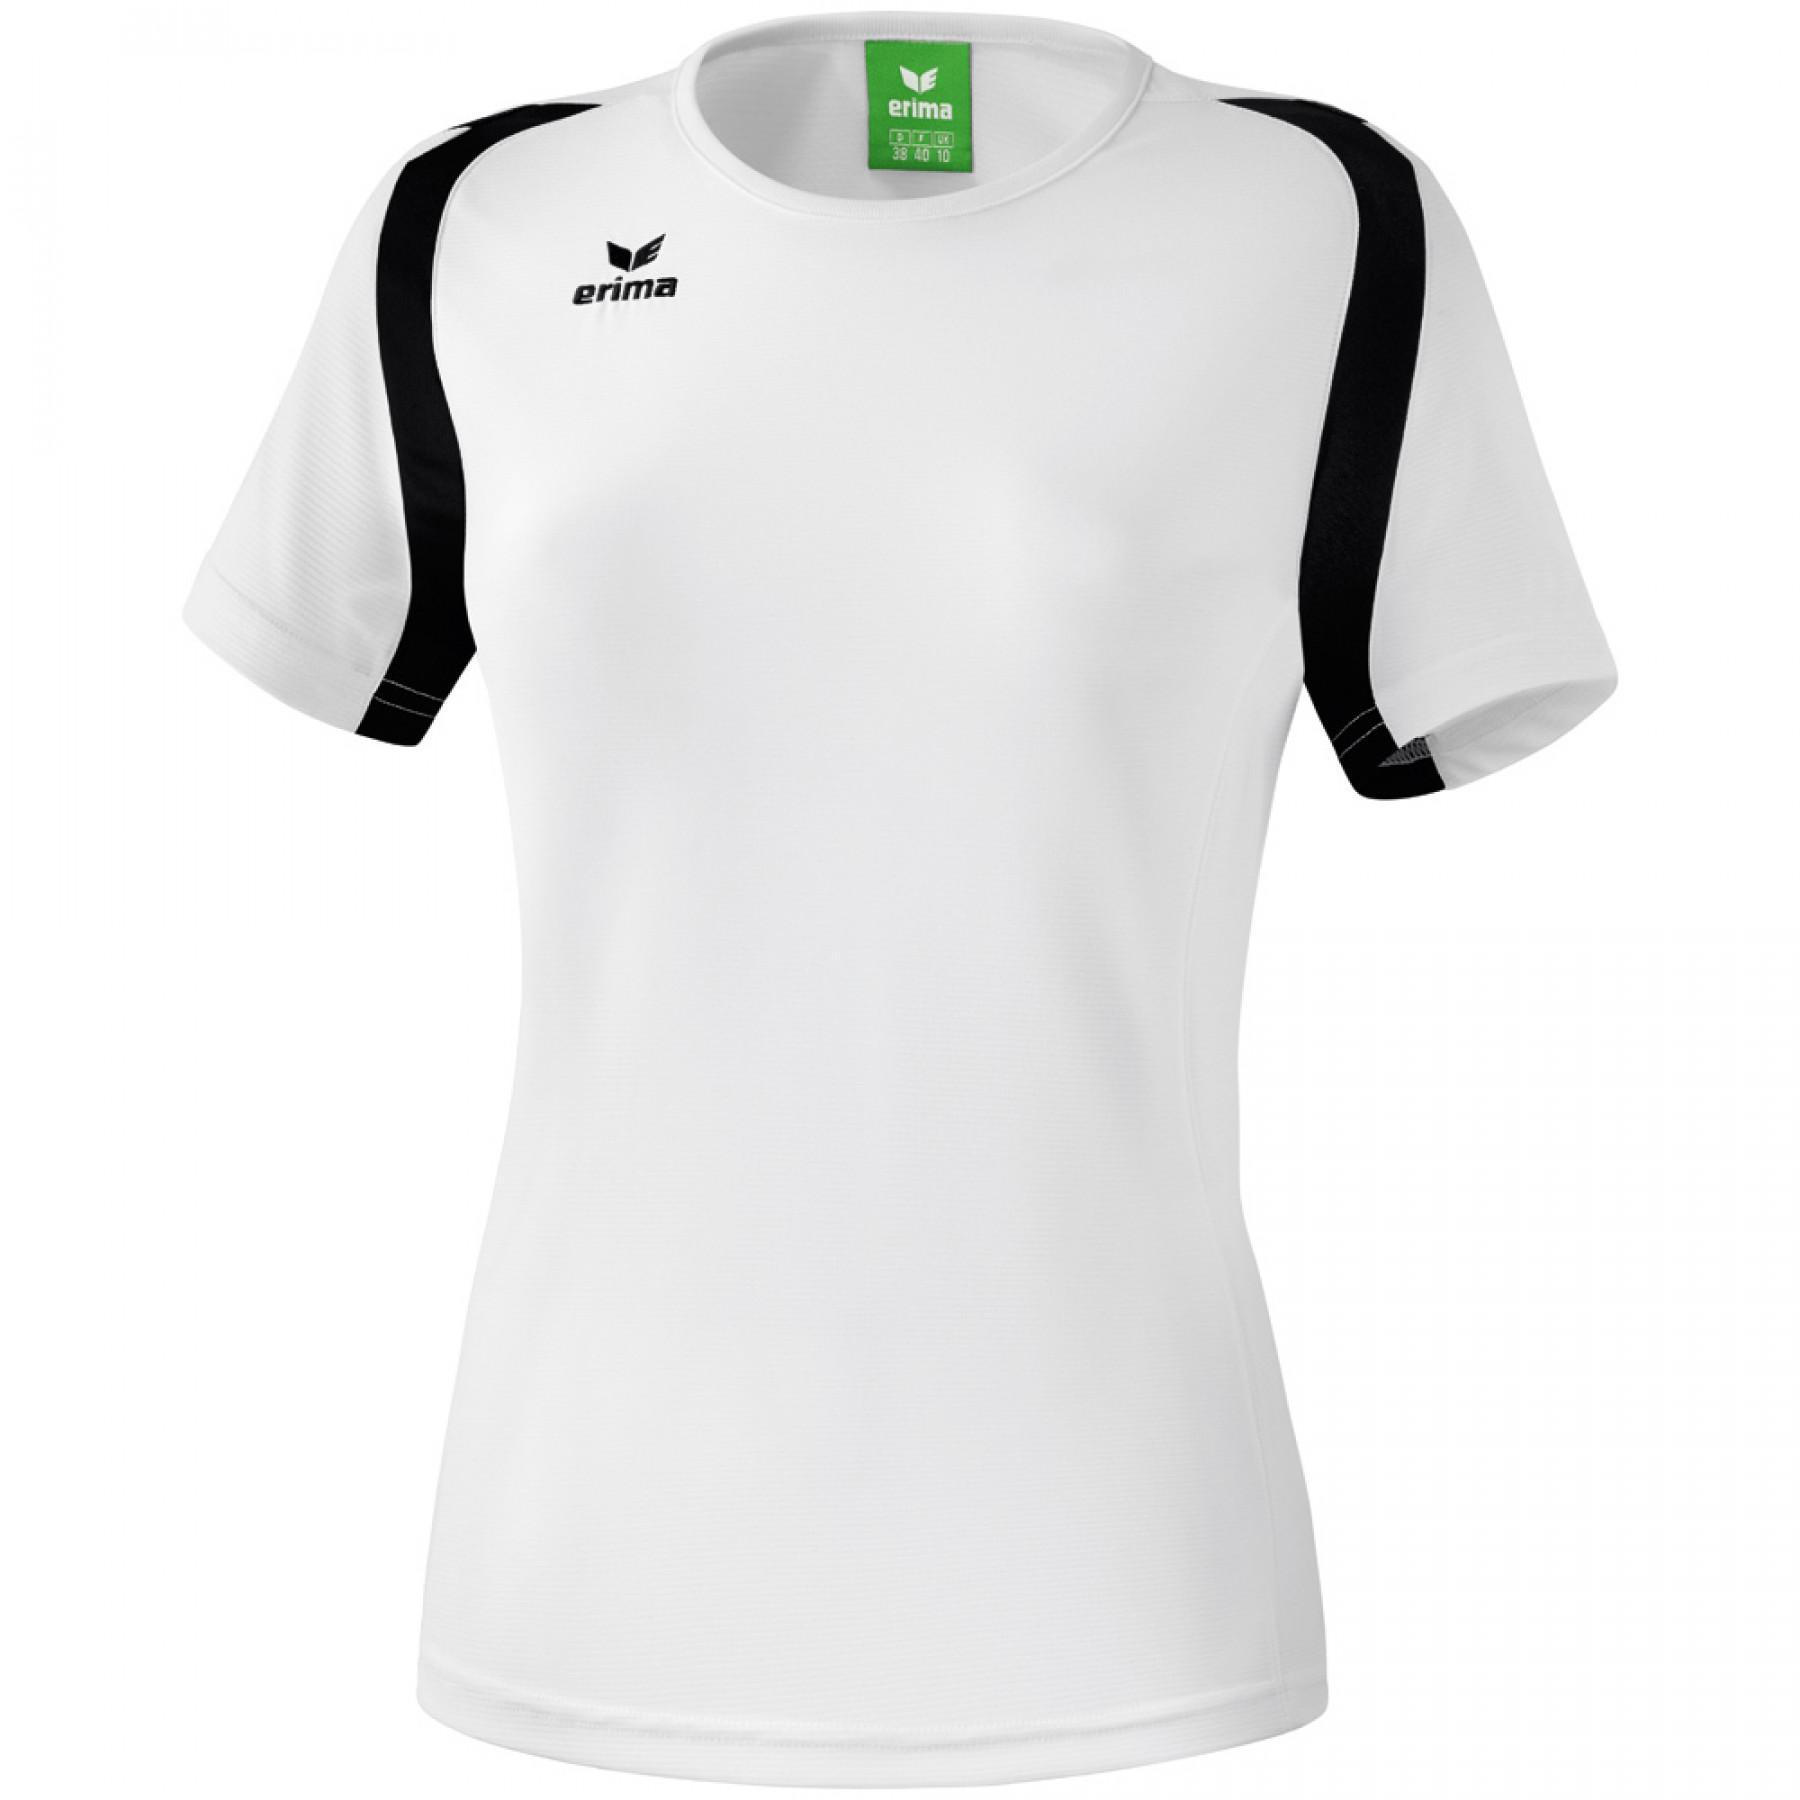 rekken visueel honderd Women's T-shirt Erima Razor 2.0 - Erima - Brands - Handball wear